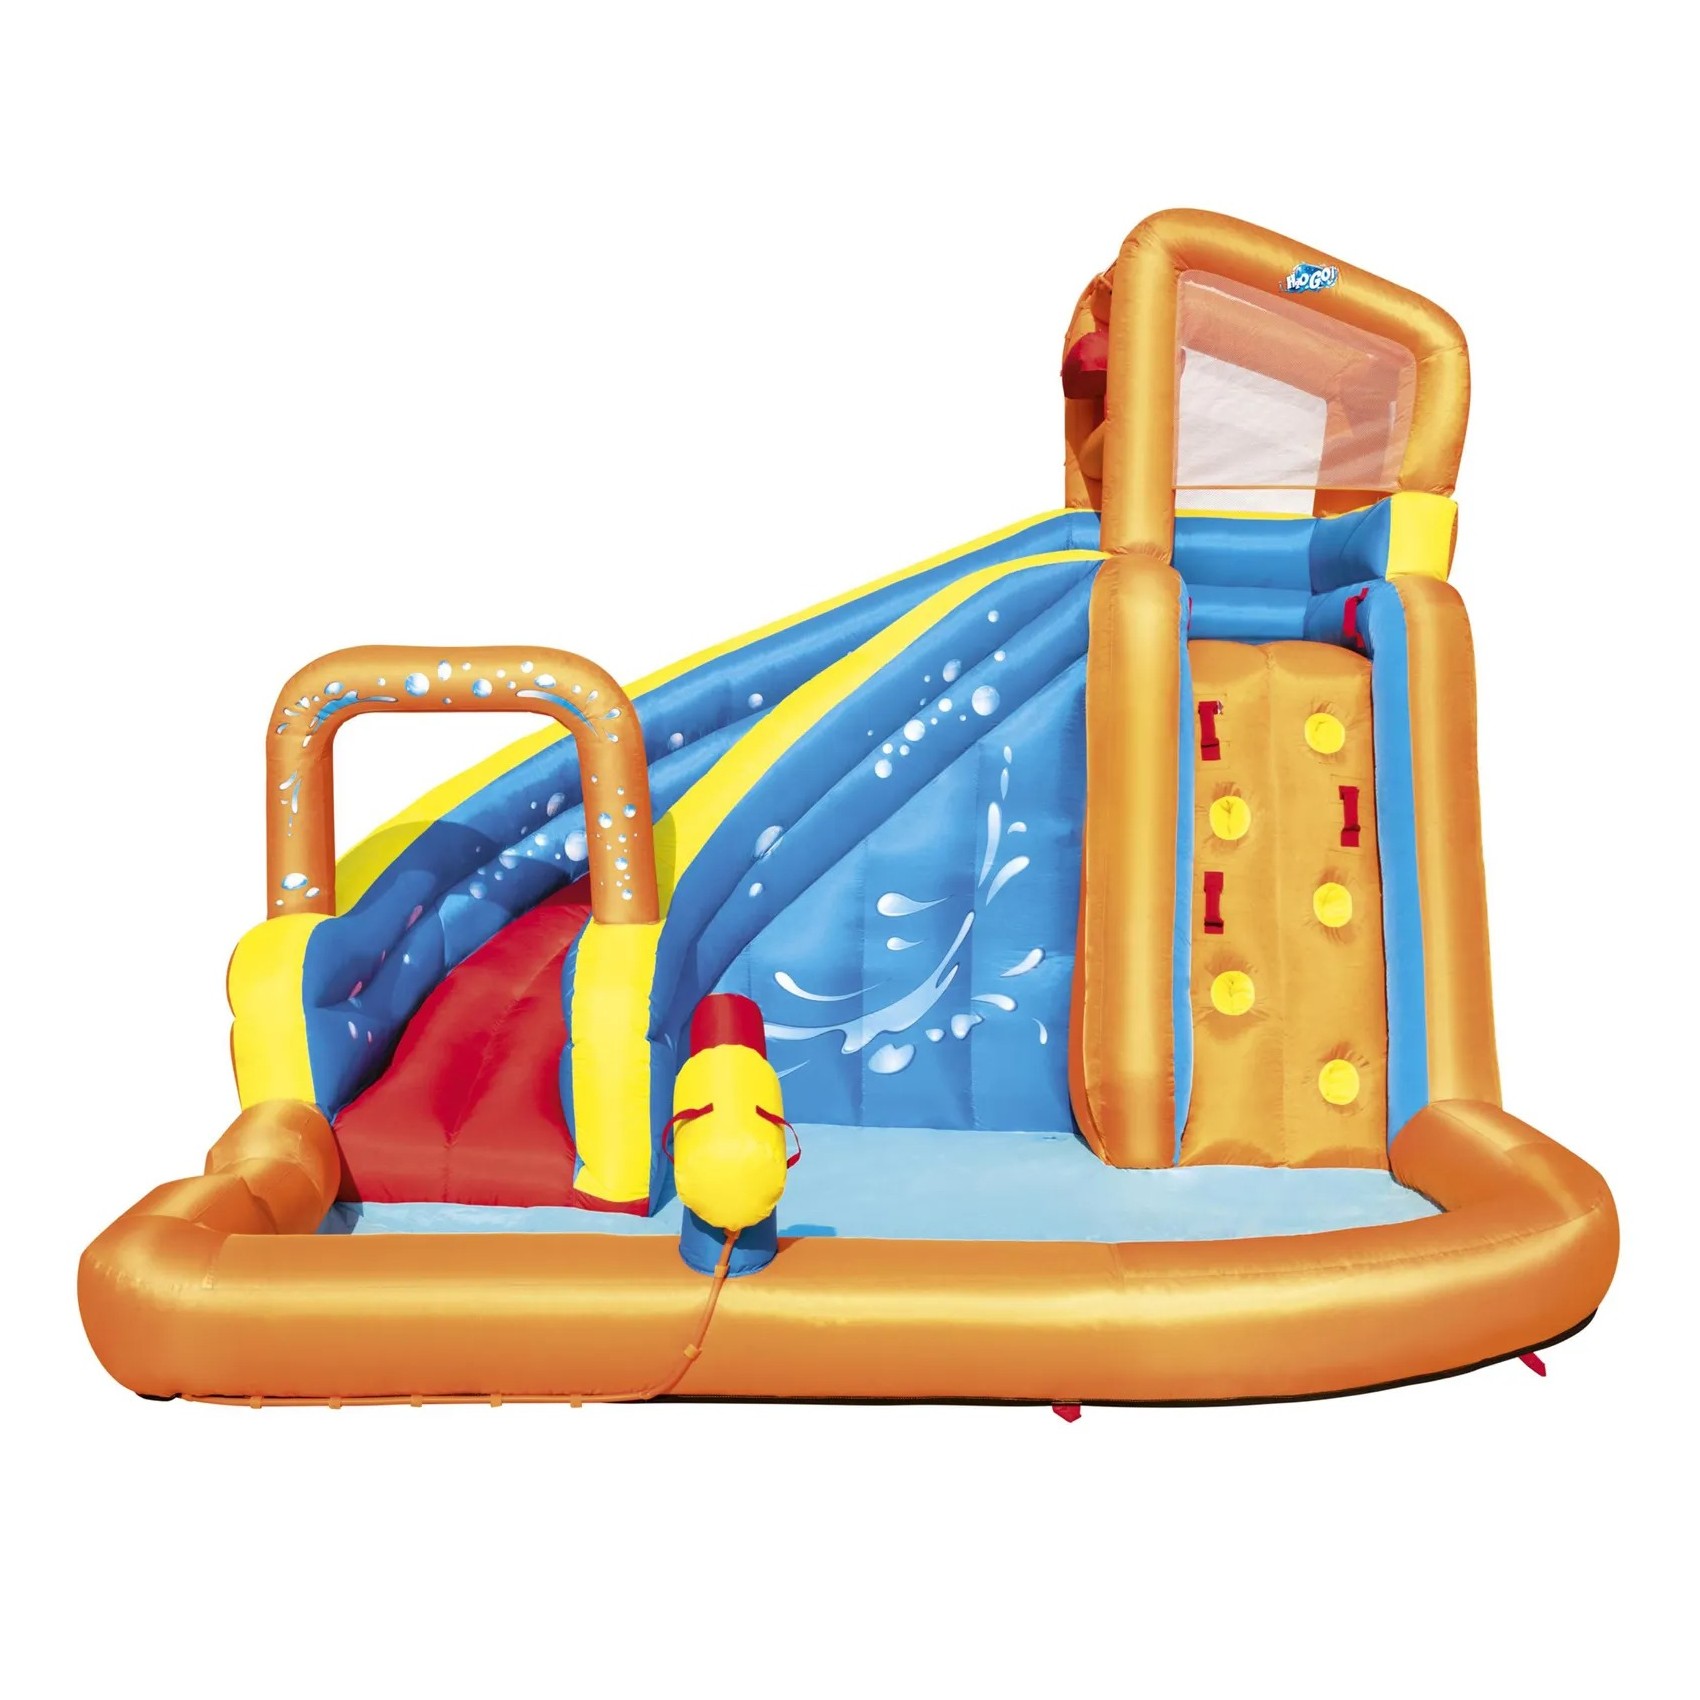 Аквапарк надувной Bestway Турбо 3,65x3,2x2,7 м (53301) детский надувной бассейн intex